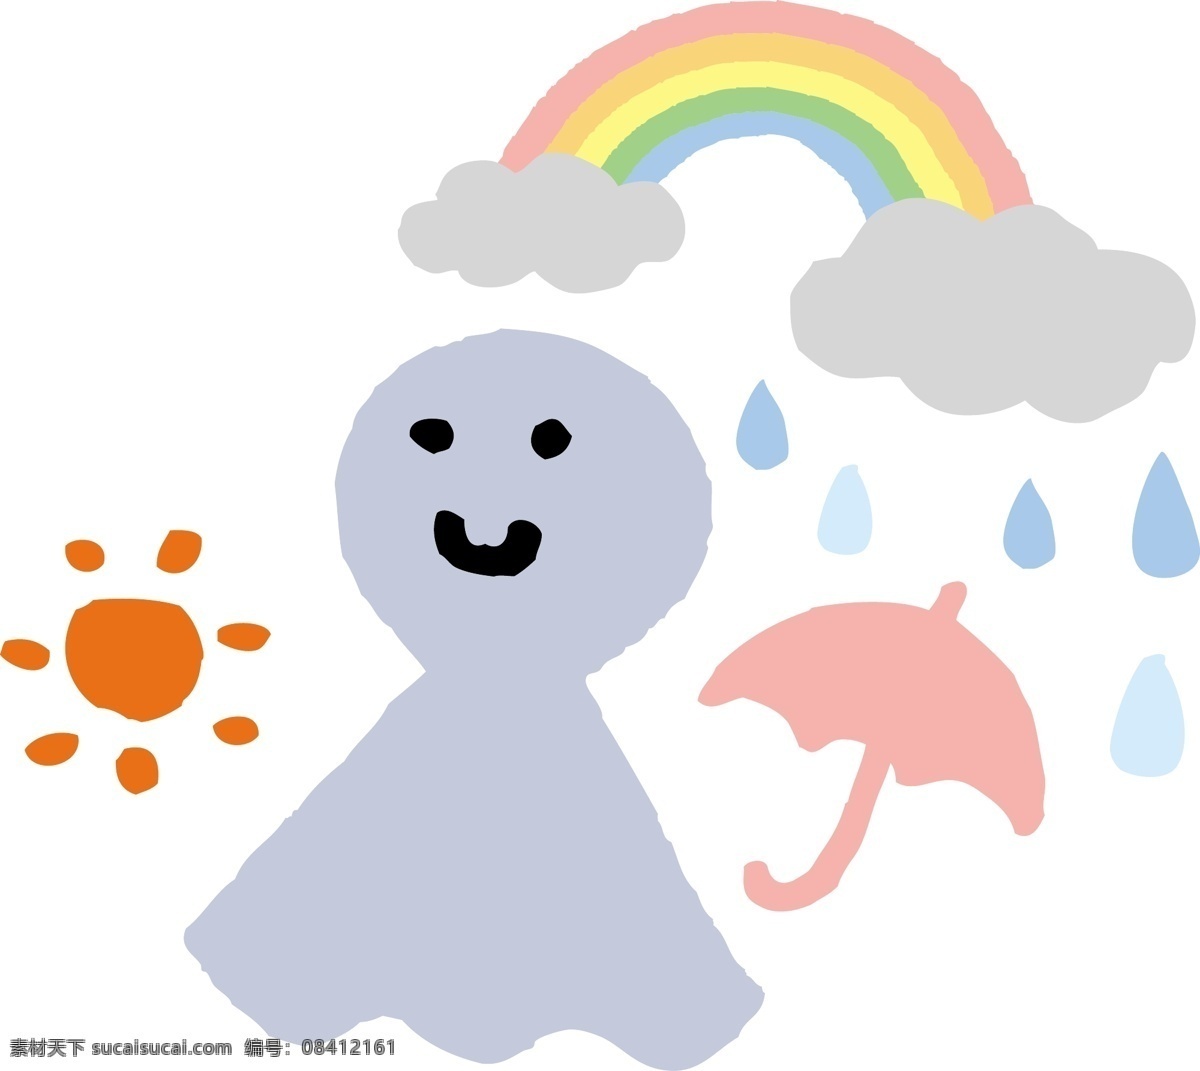 彩虹 雨伞 太阳 插画图 雨点 动漫动画 风景漫画